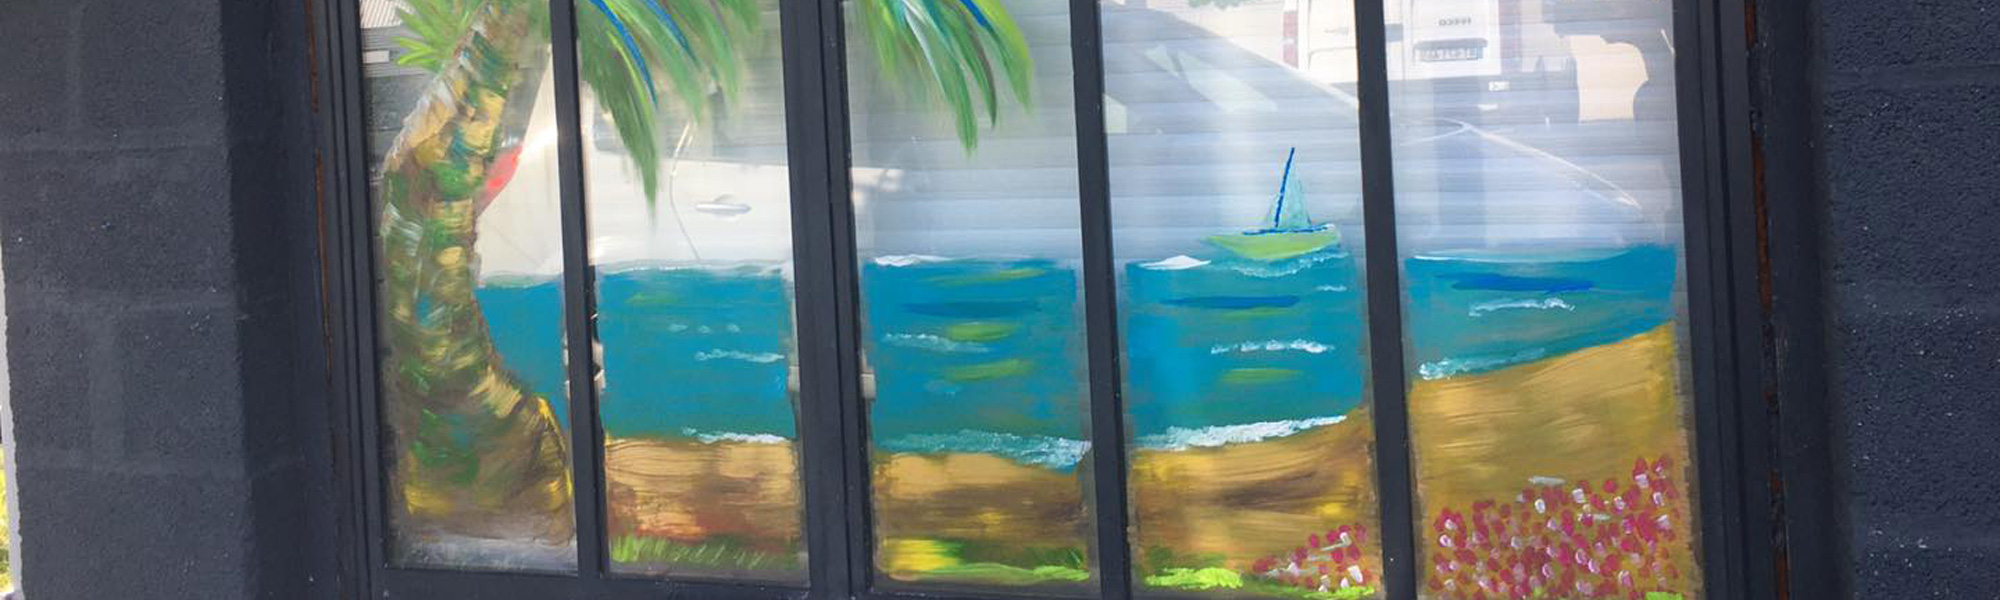 Peinture sur vitrine estivale pour la biscuiterie la dunkerquoise en cet été 2020